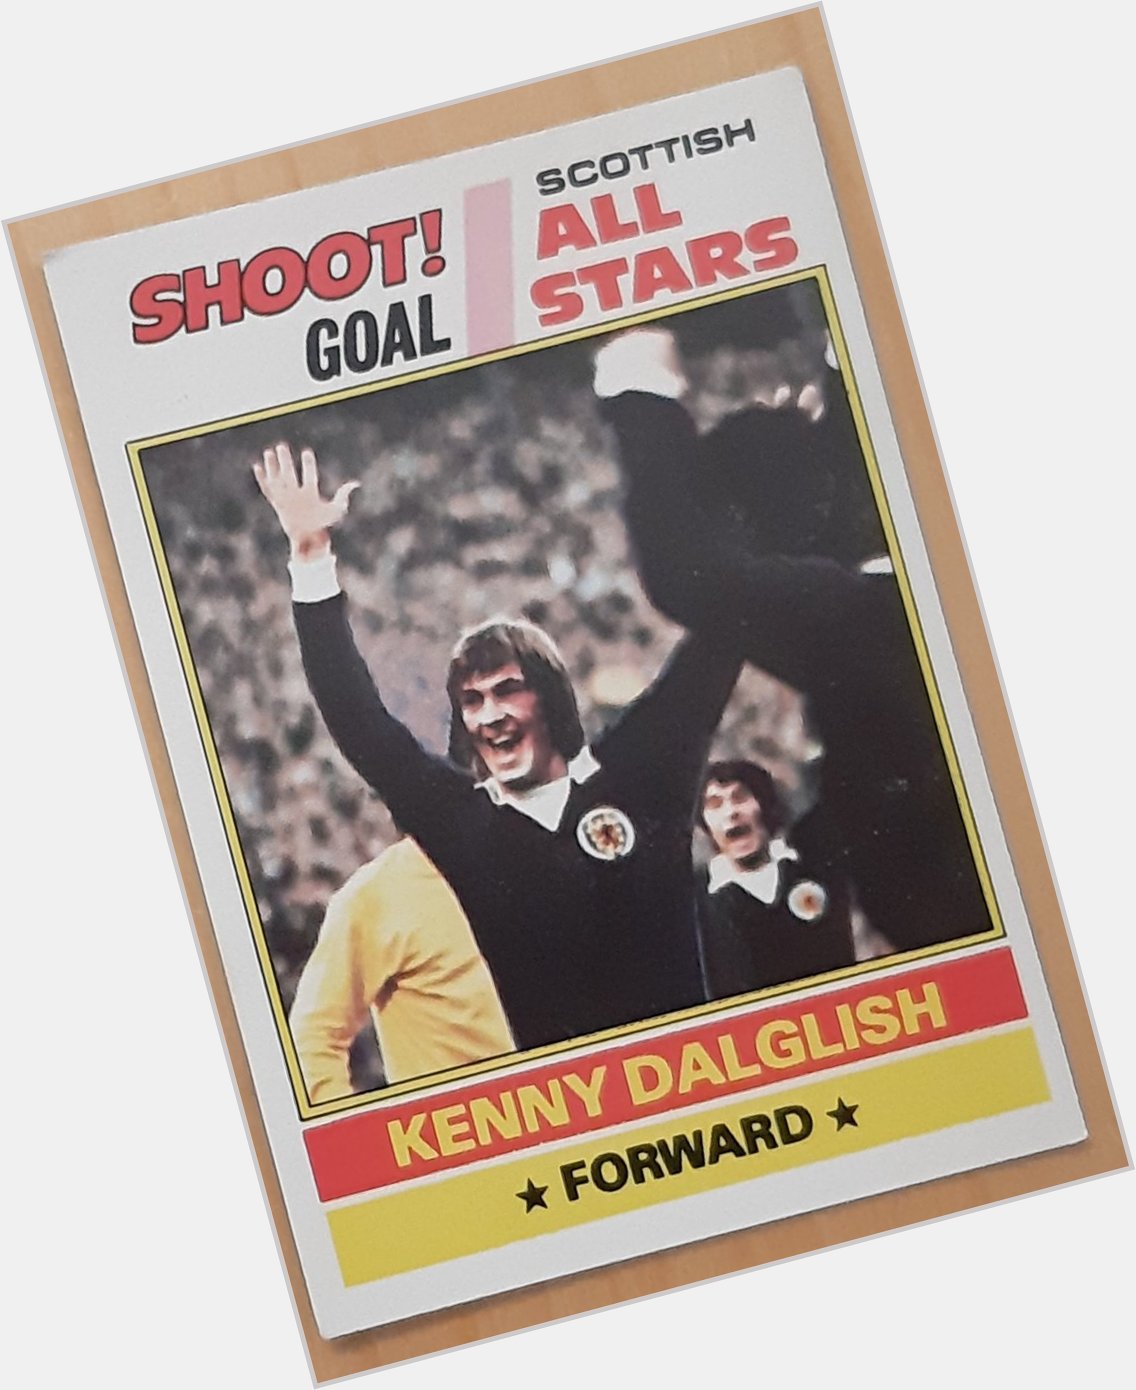 Happy 70th birthday to King Kenny Dalglish  